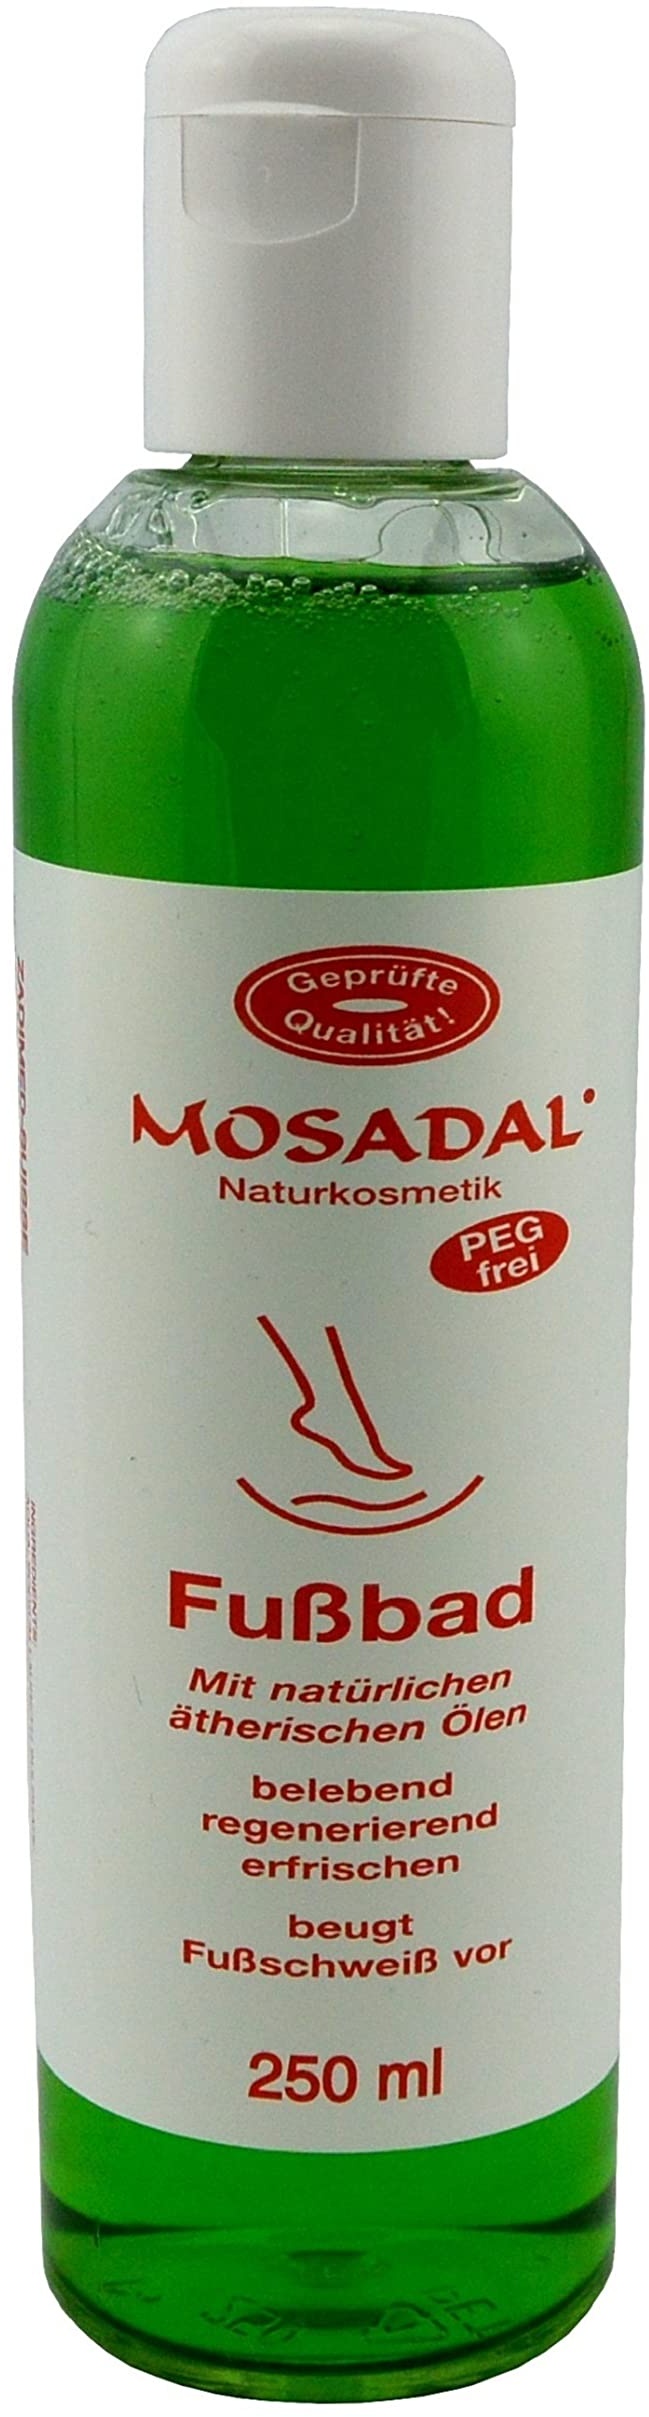 mosadal lotion